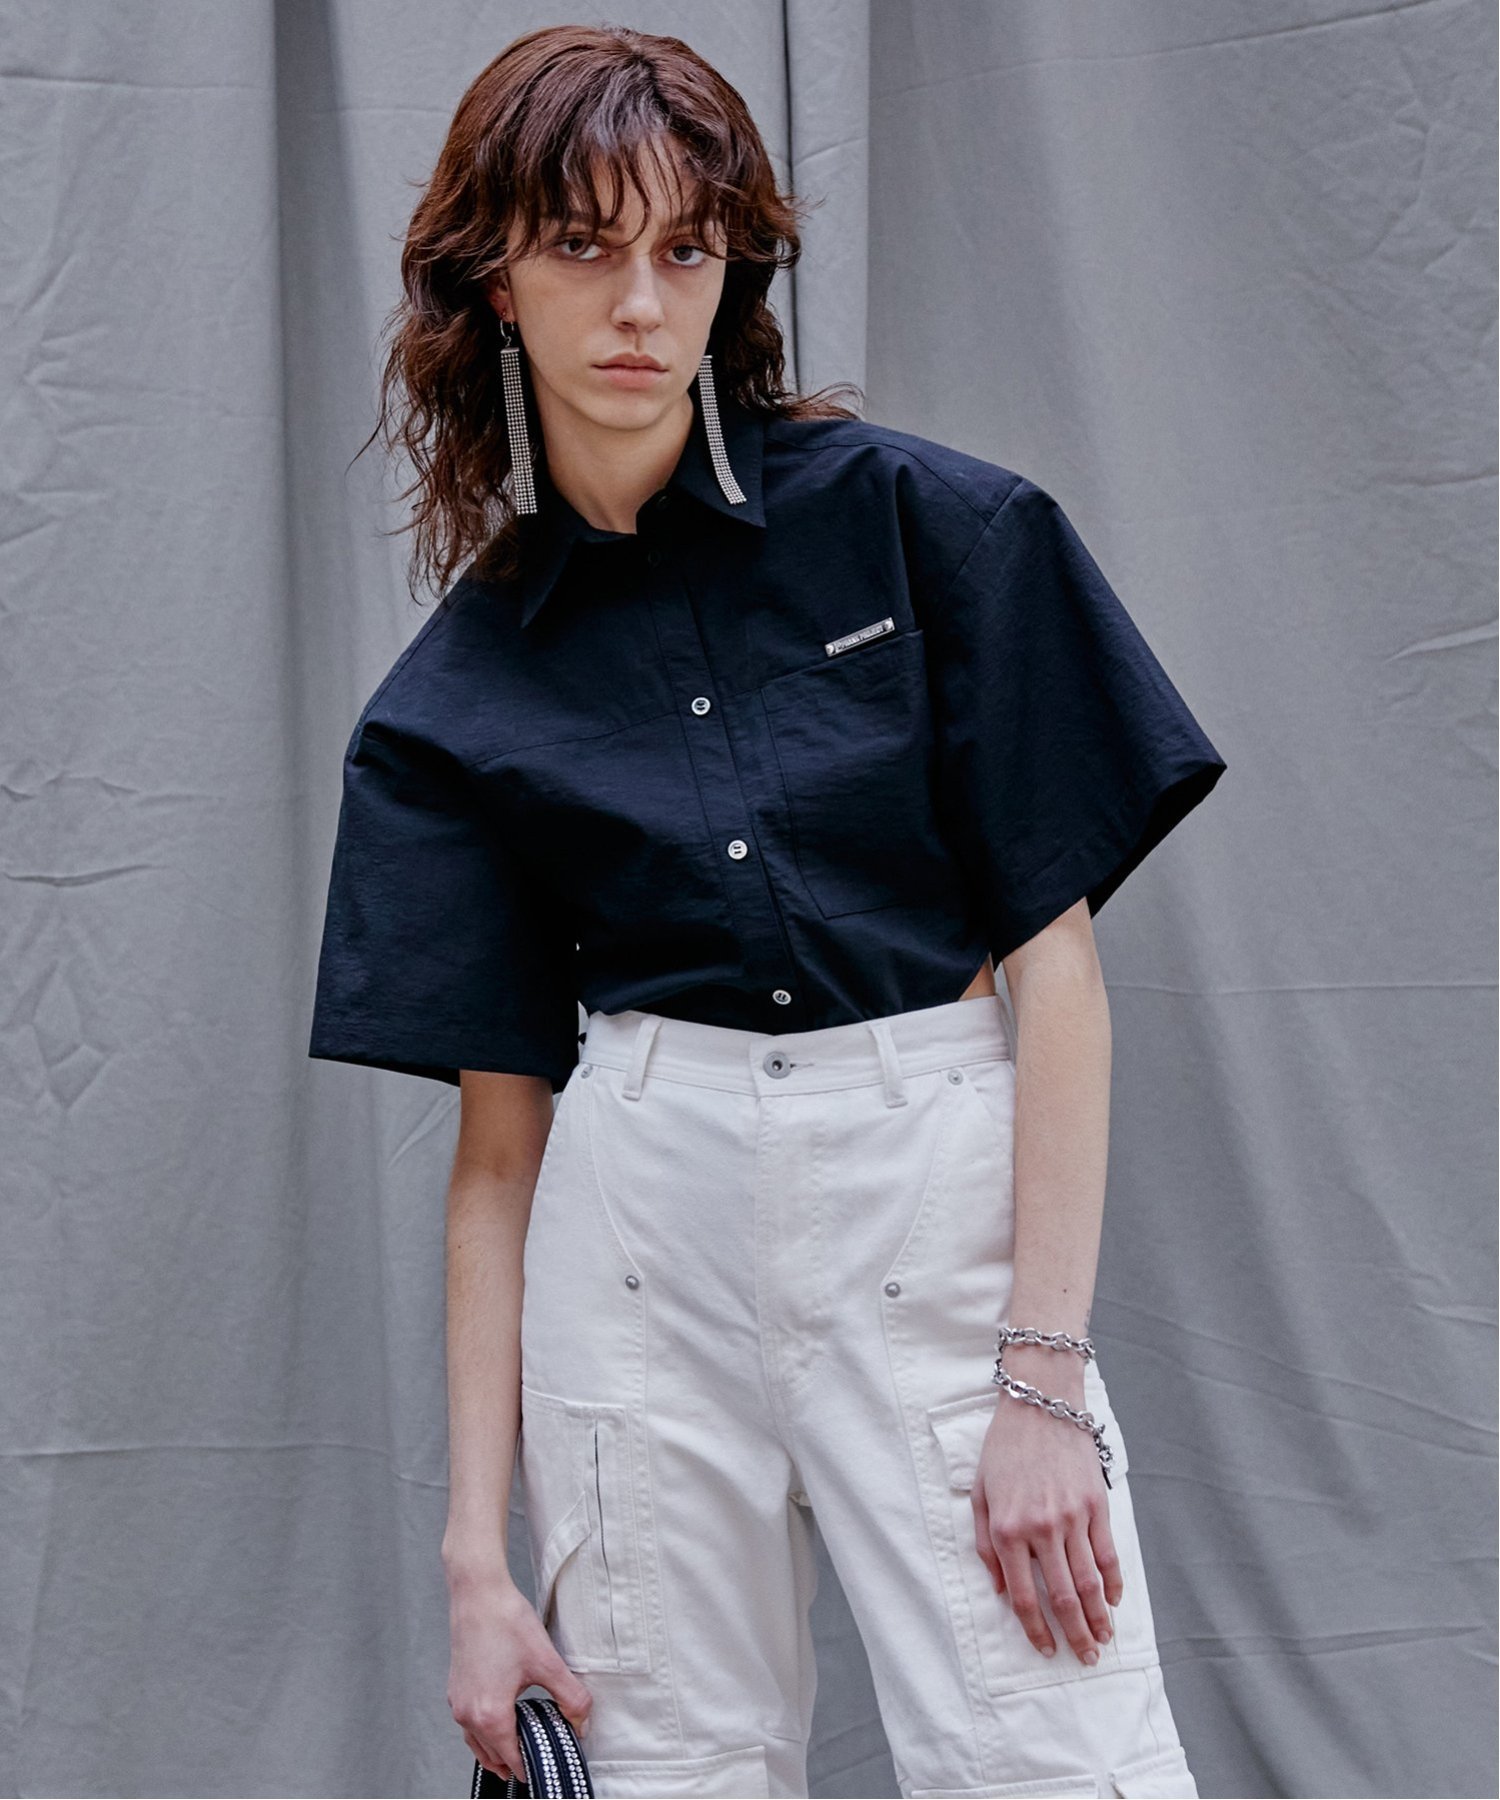 PRANK PROJECT ハーフスリーブシャツボディスーツ / Half Sleeve Shirt Bodysuit プランク プロジェクト トップス シャツ ブラウス ブラック ホワイト【送料無料】